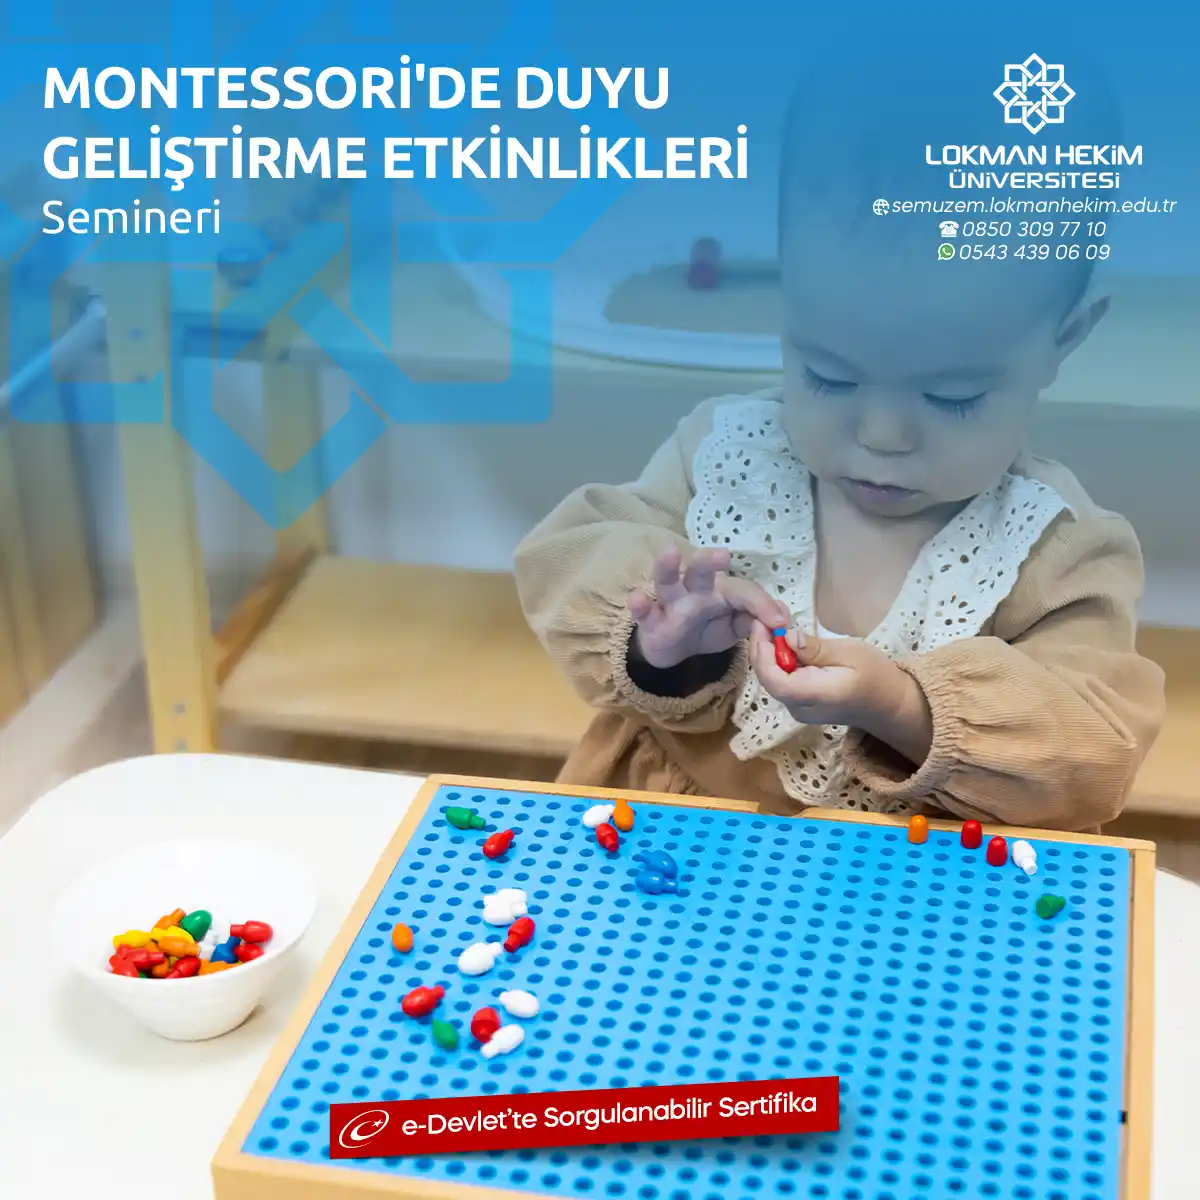 Montessori'de Duyu Geliştirme Etkinlikleri